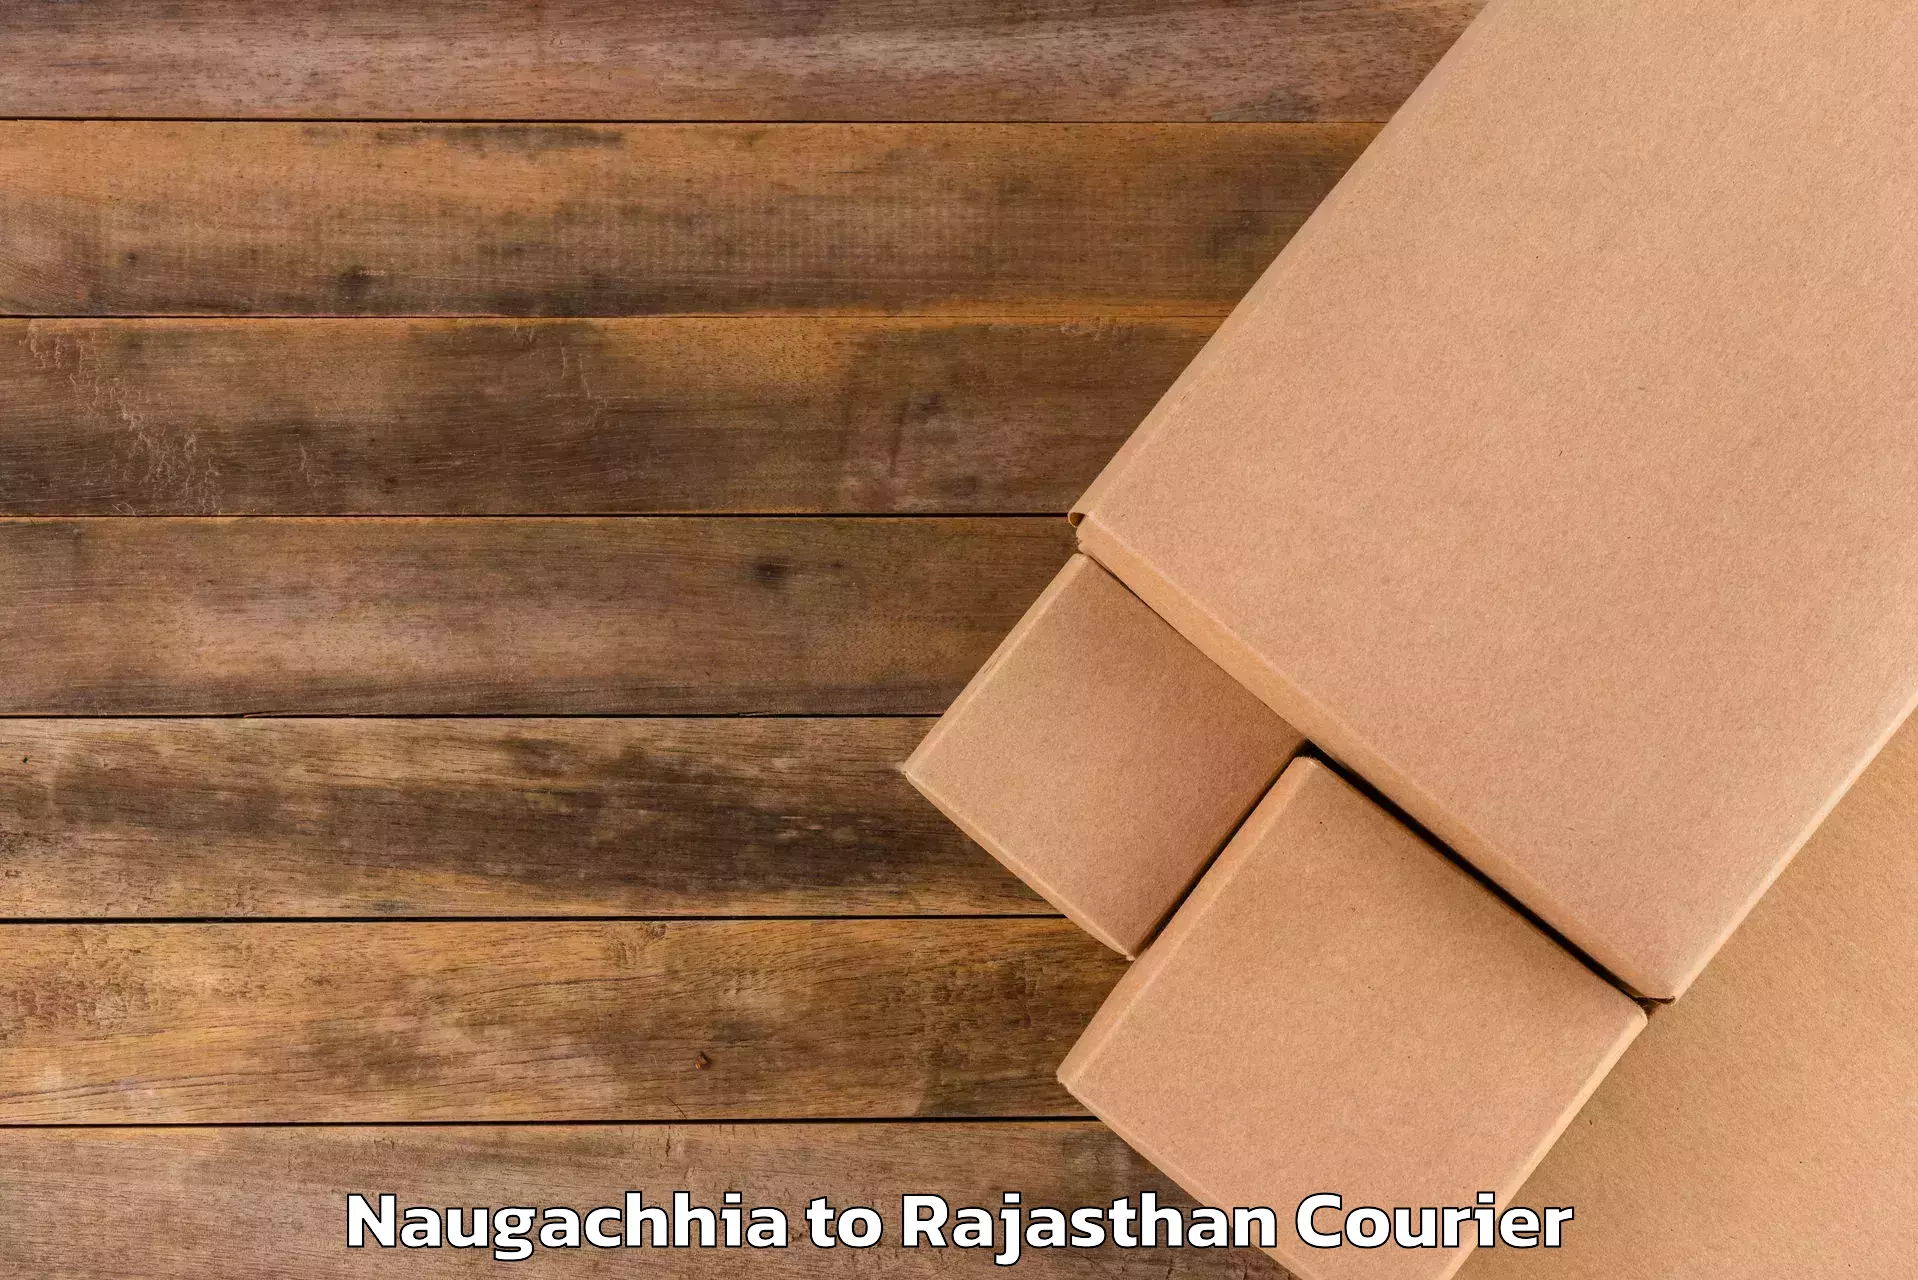 Luggage transit service Naugachhia to Bhinder